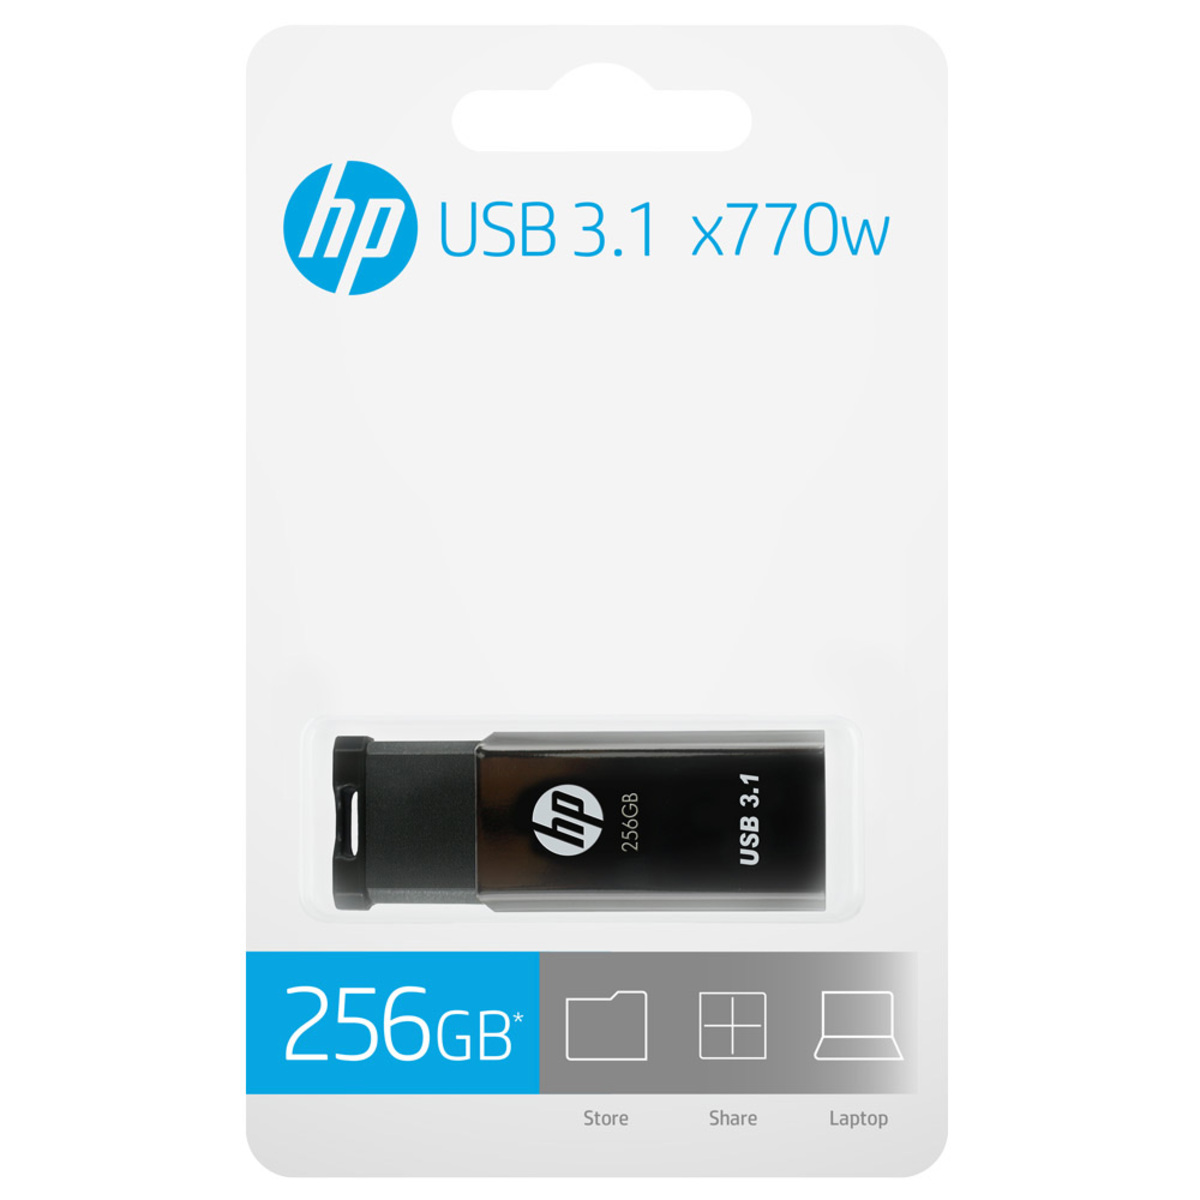 HP USB 3.1 Flash Drive HPFD770W 256GB